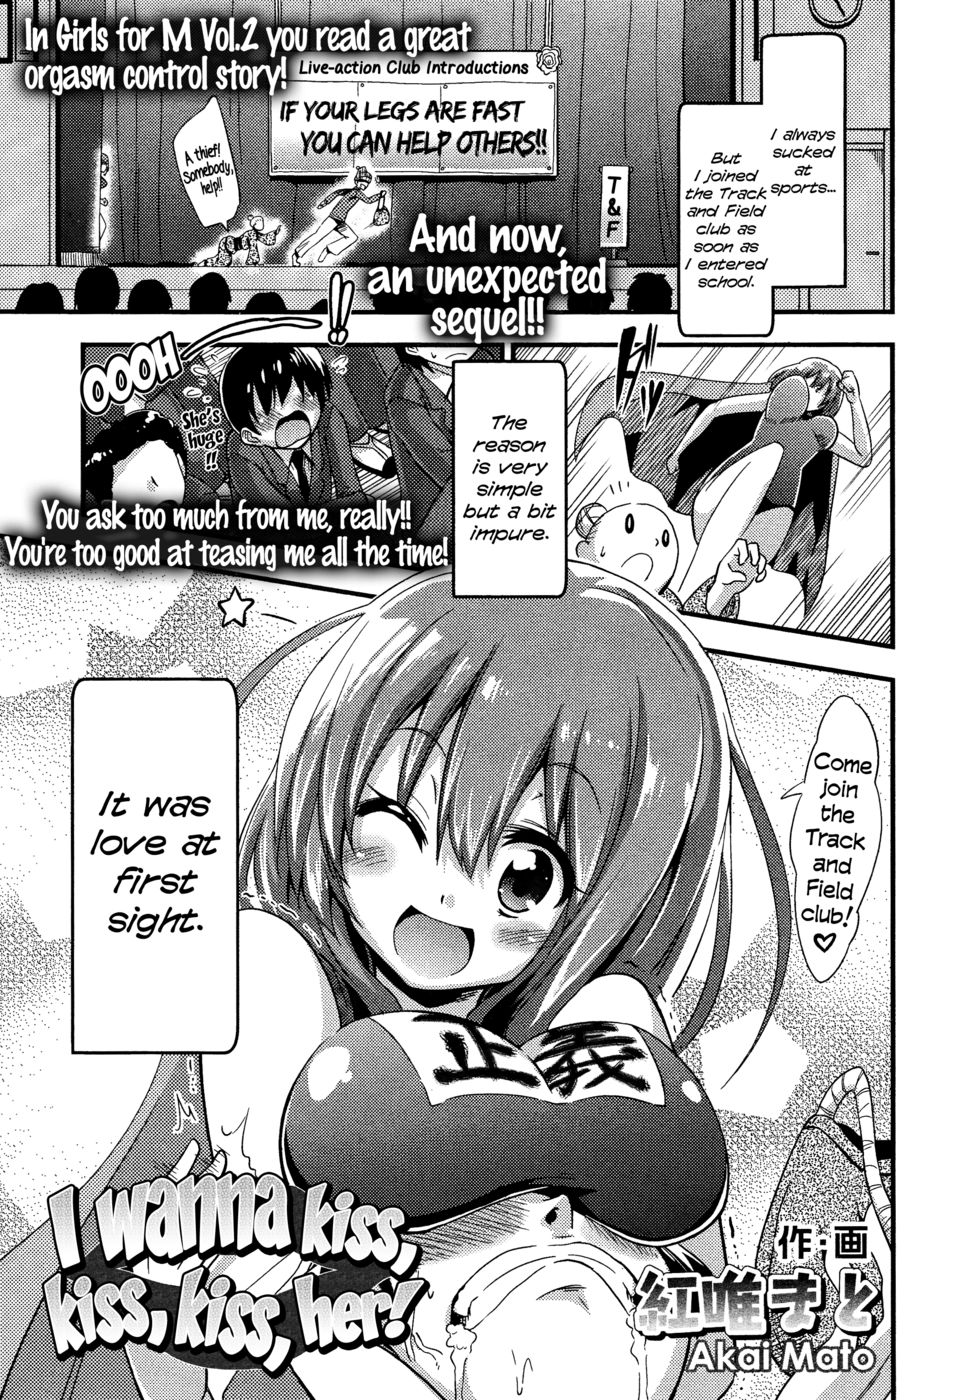 Hentai Manga Comic-I wanna kiss, kiss, kiss her!-Read-1